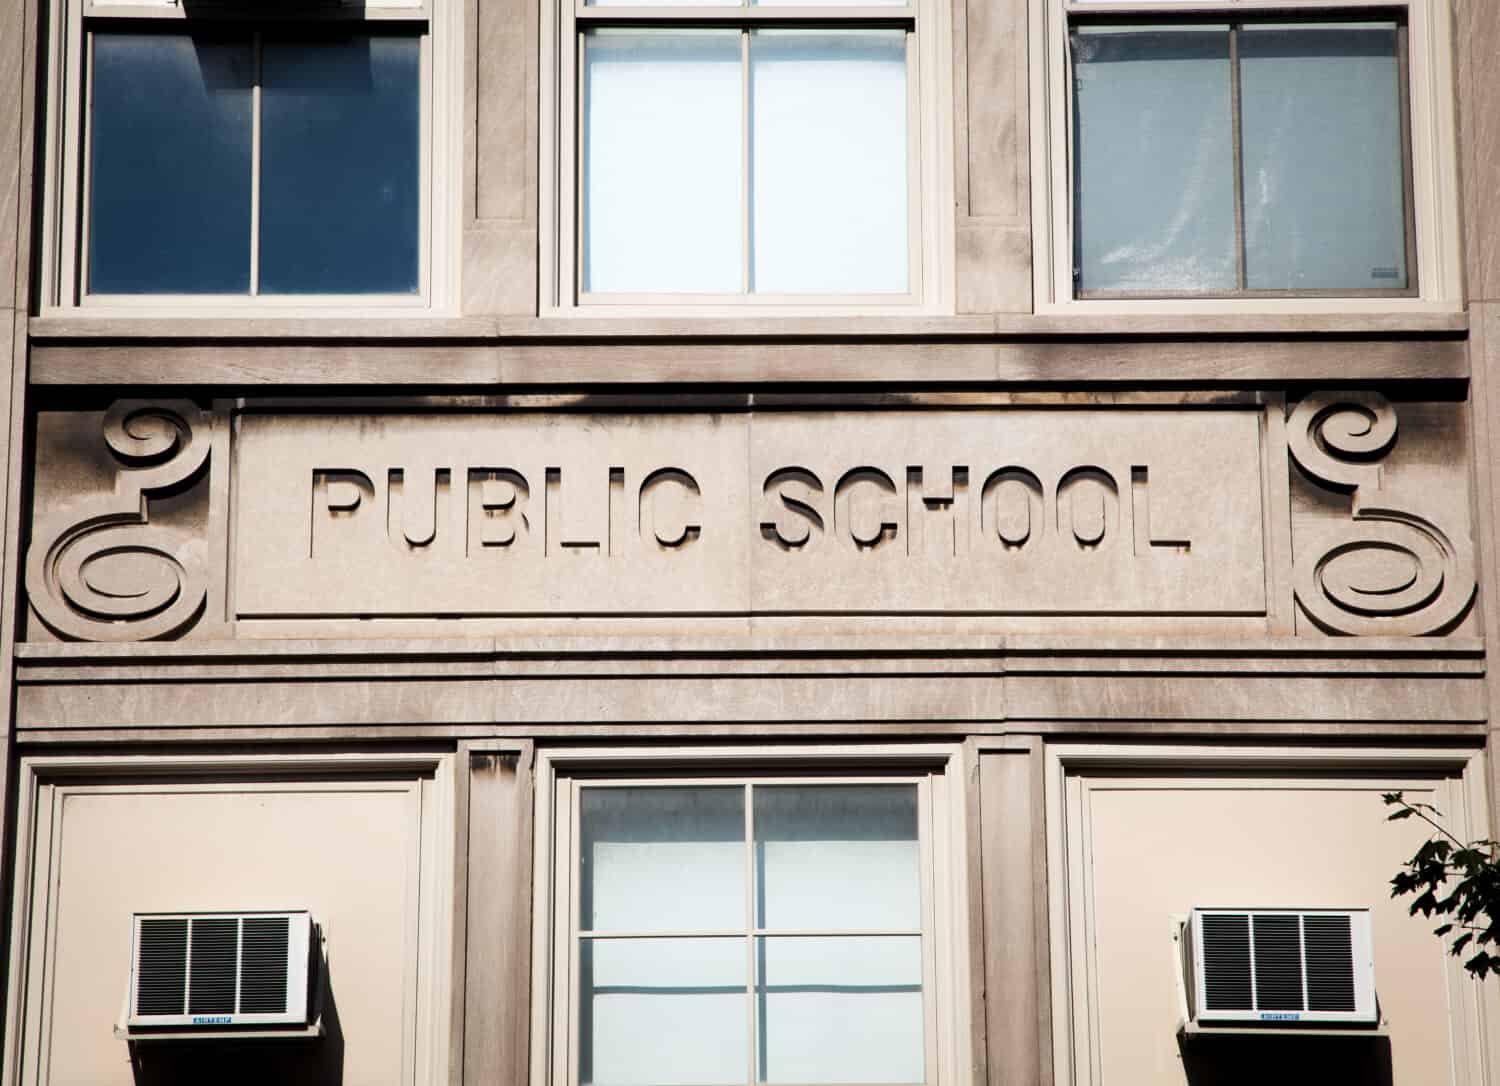 Public school building